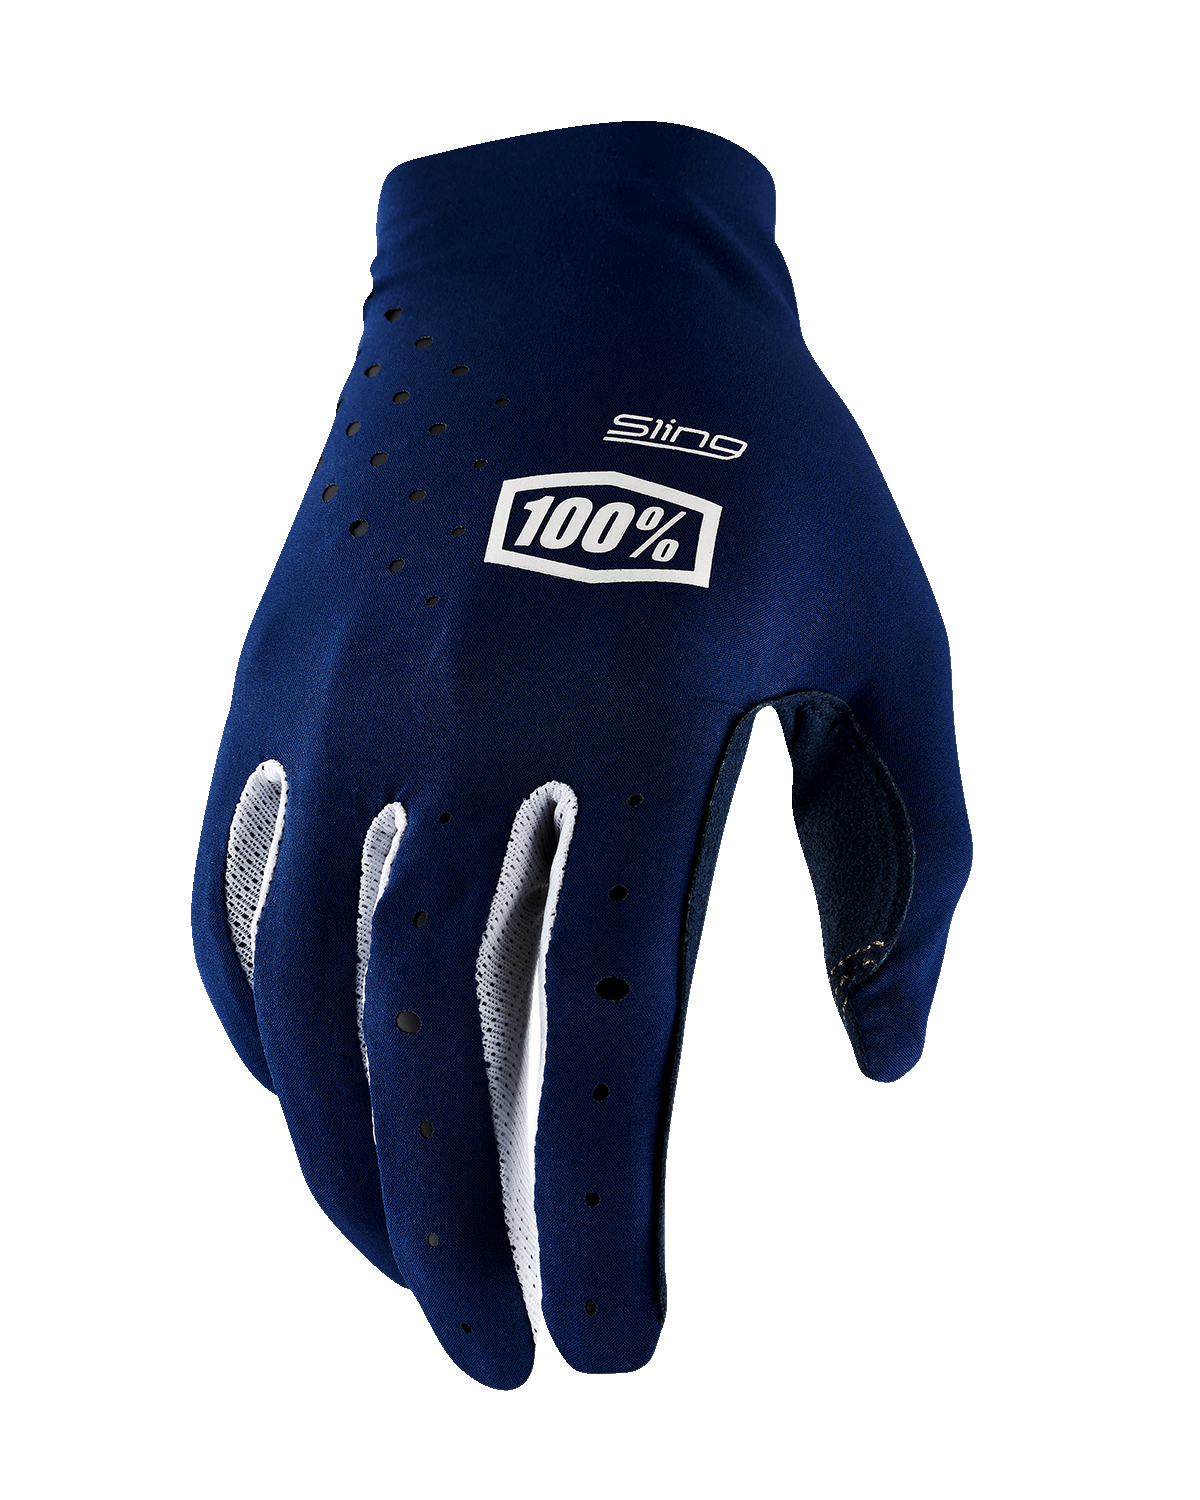 100% Sling MX Gloves - Navy - Large 10023-00012